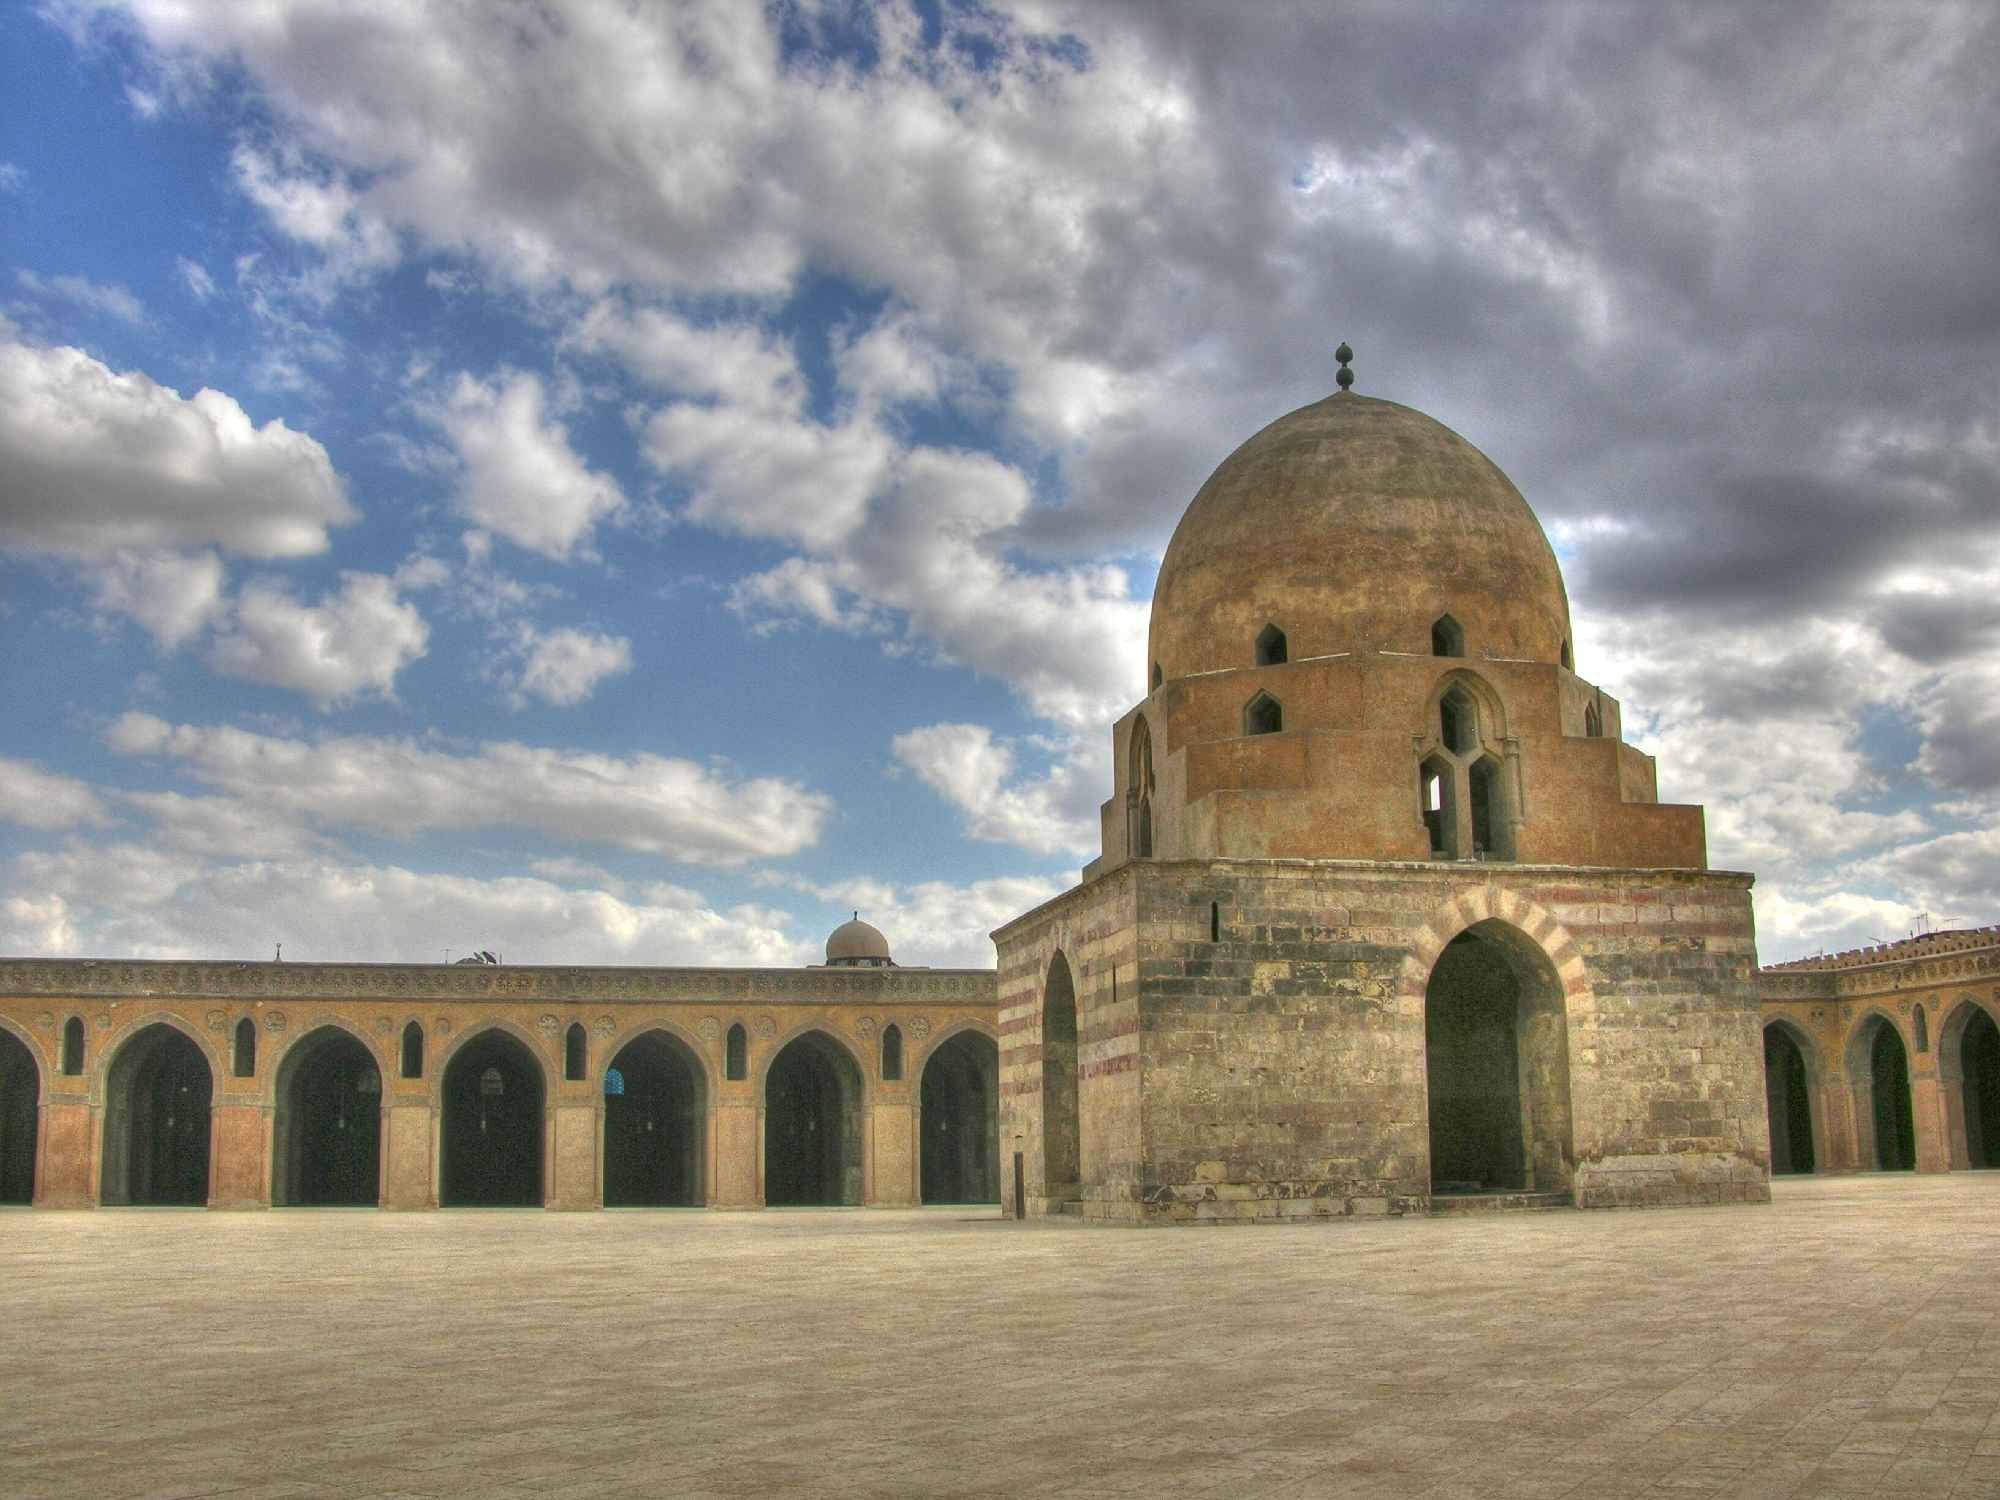 Древний мусульманский. Мечеть ибн Тулуна. Мечети арабского халифата. Мечеть ибн Тулун в Египте. Мечети арабского халифата в средние века.